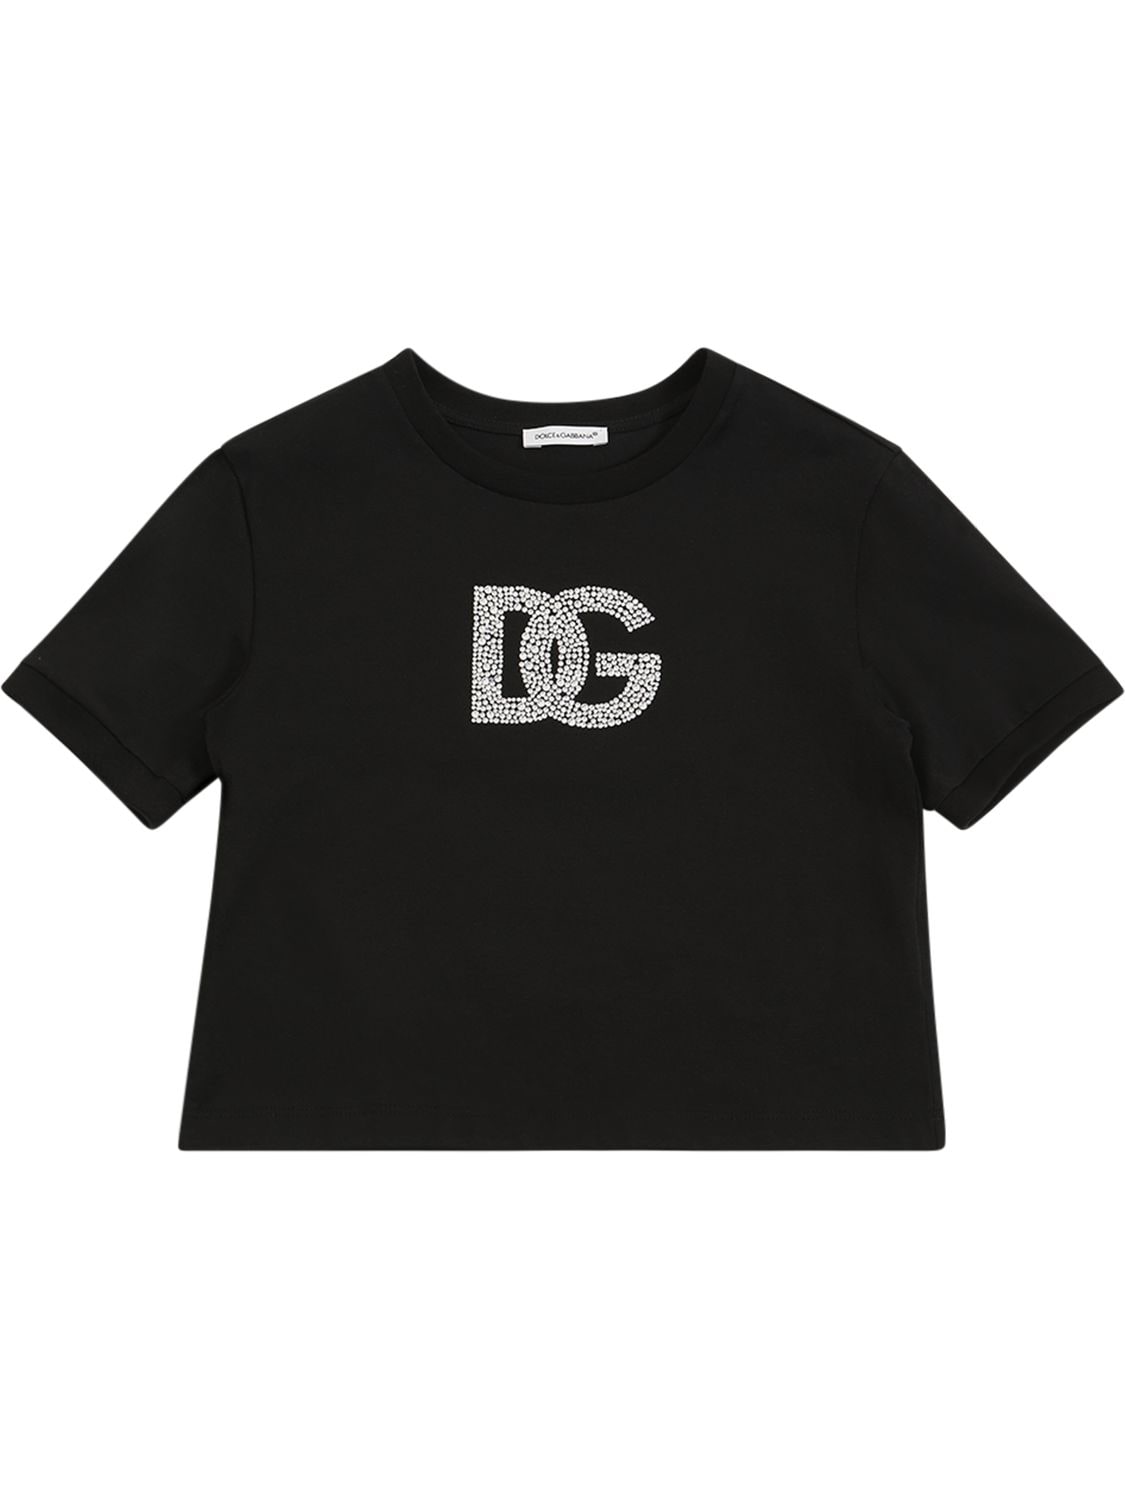 T-shirt In Jersey Di Cotone Con Logo - DOLCE & GABBANA - Modalova